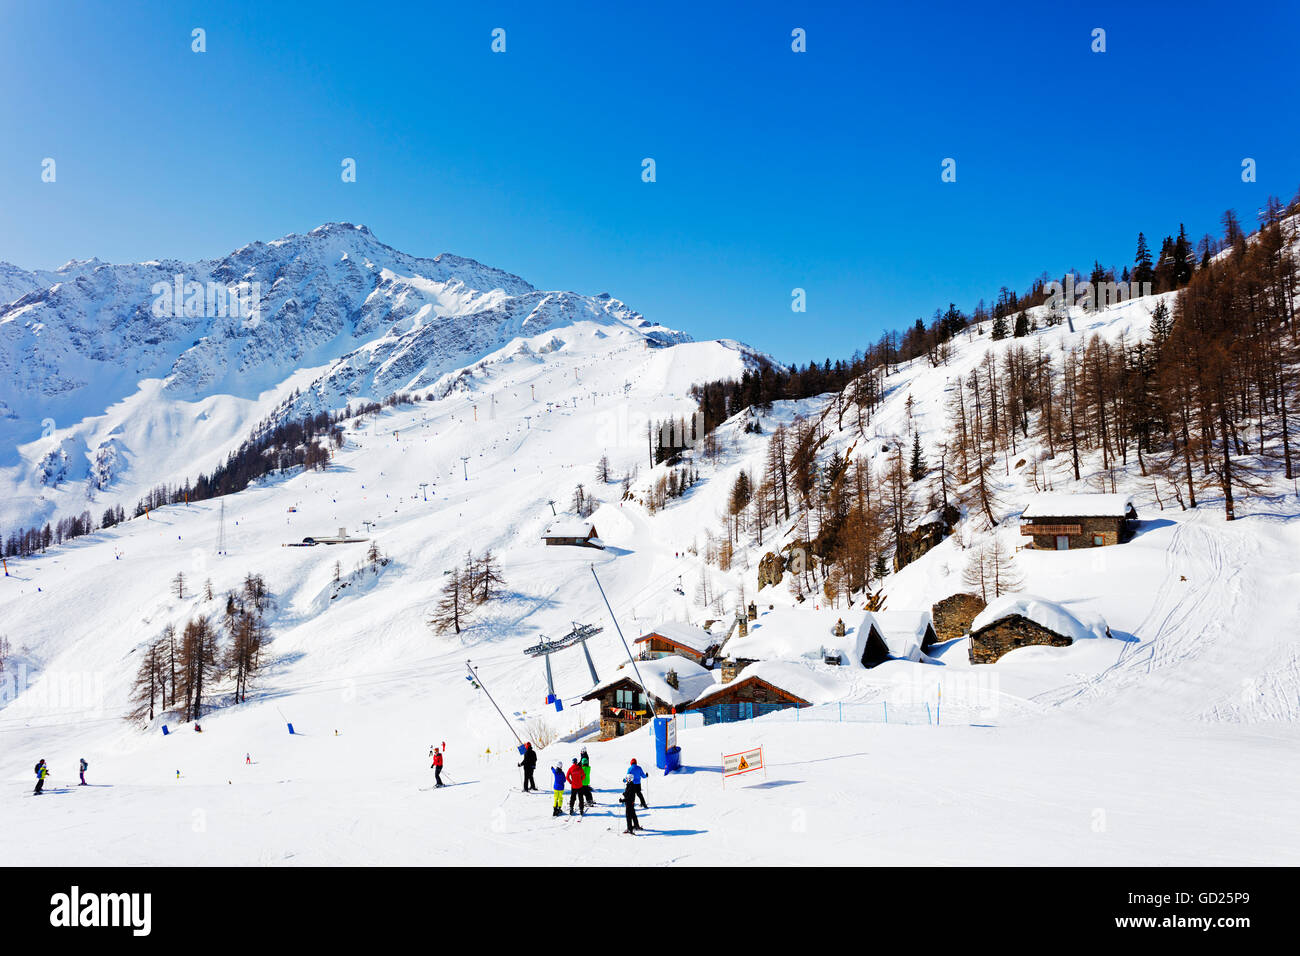 Station de ski de Courmayeur, vallée d'Aoste, Alpes italiennes, l'Italie, l'Europe Banque D'Images